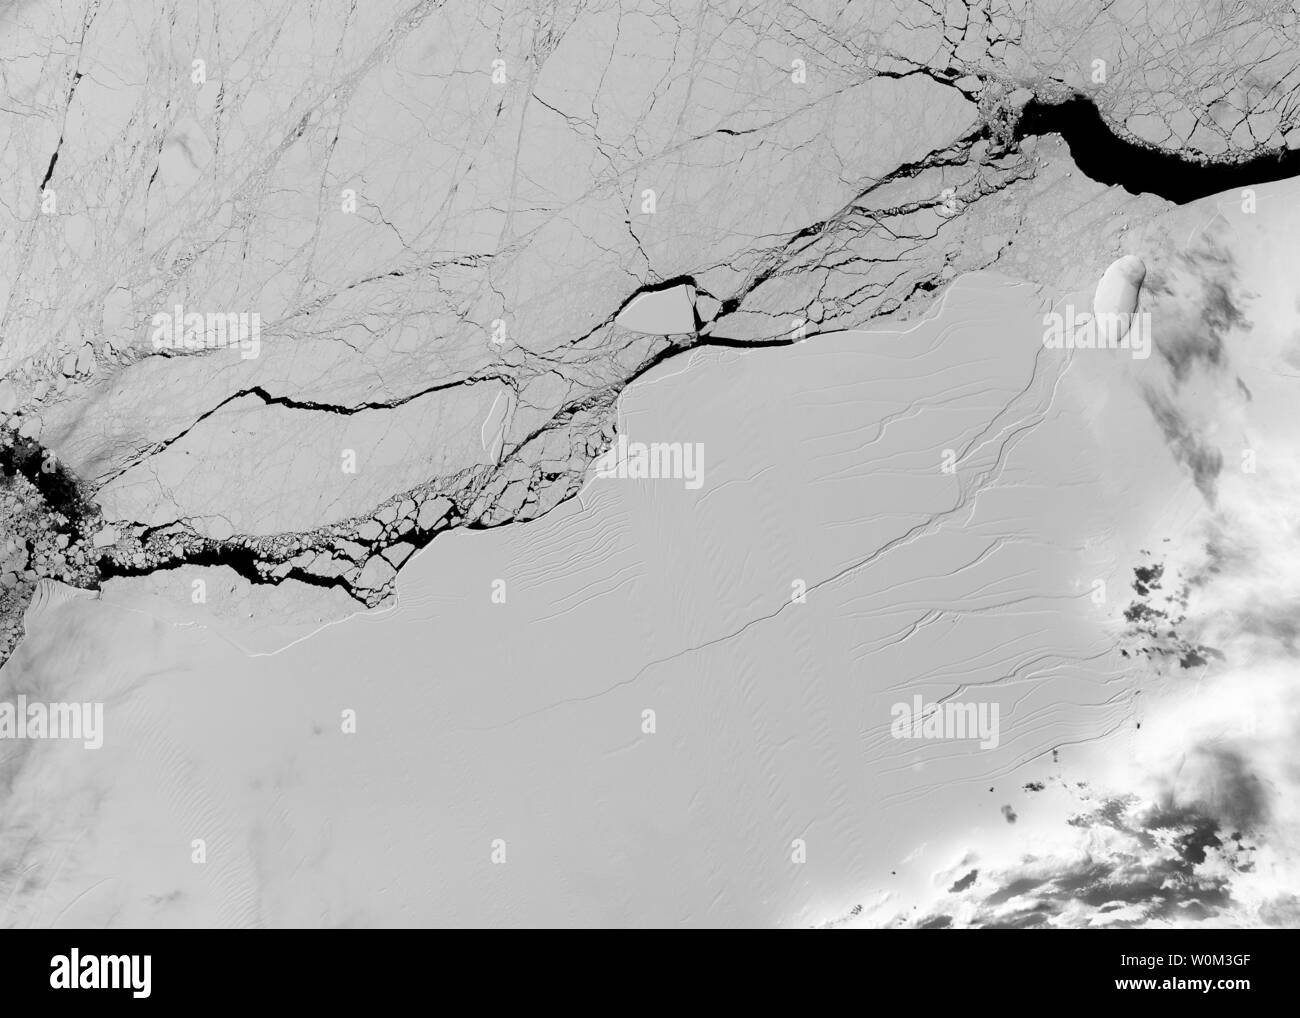 Immagine satellitare di una lunga crepa nel Larsen C ice shelf, adottate il 8 marzo 2017, dalla terra operative imager sul NASA/USGS Landsat 8 veicolo spaziale. A volte tra il 10 luglio e il 12 luglio, un iceberg approssimativamente le dimensioni del Delaware scisso dall'Antartide la Larsen C Ripiano di ghiaccio. Le misure di iceberg 2239 miglia quadrate e pesa più di 1 trilione di tonnellate metriche. A seguito della scissione la Larsen C ice shelf è ora 12% più piccoli. La NASA/UPI Foto Stock